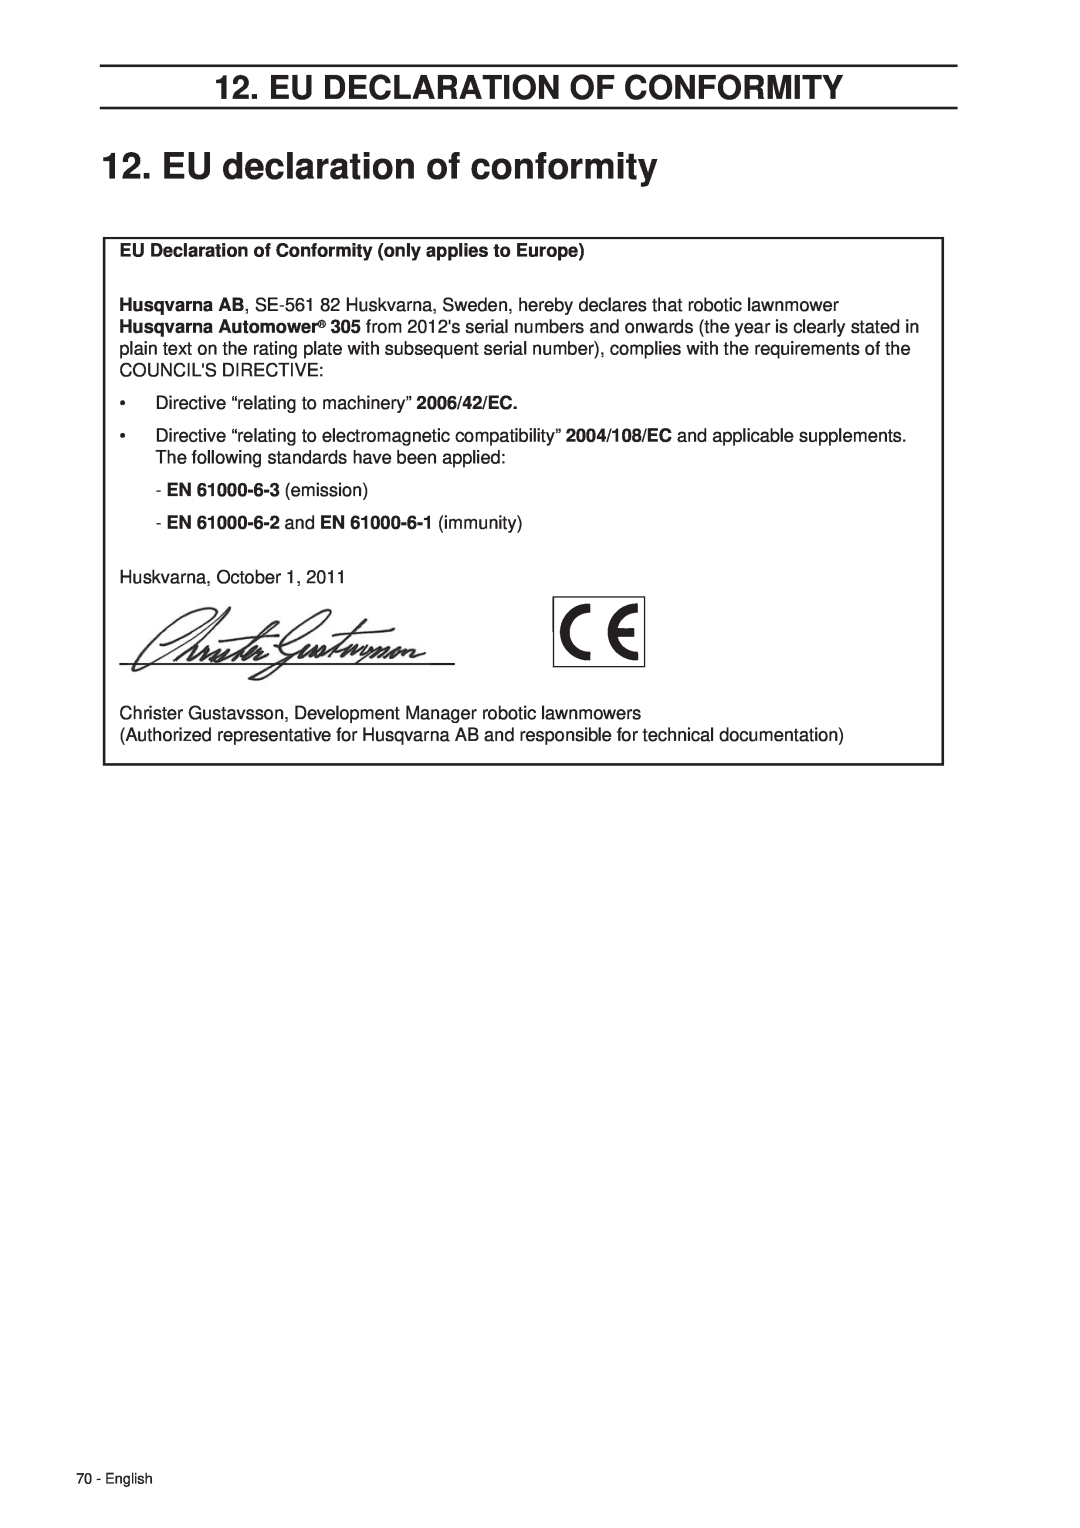 Husqvarna 305 manual EU declaration of conformity, Eu Declaration Of Conformity, EN 61000-6-3 emission 